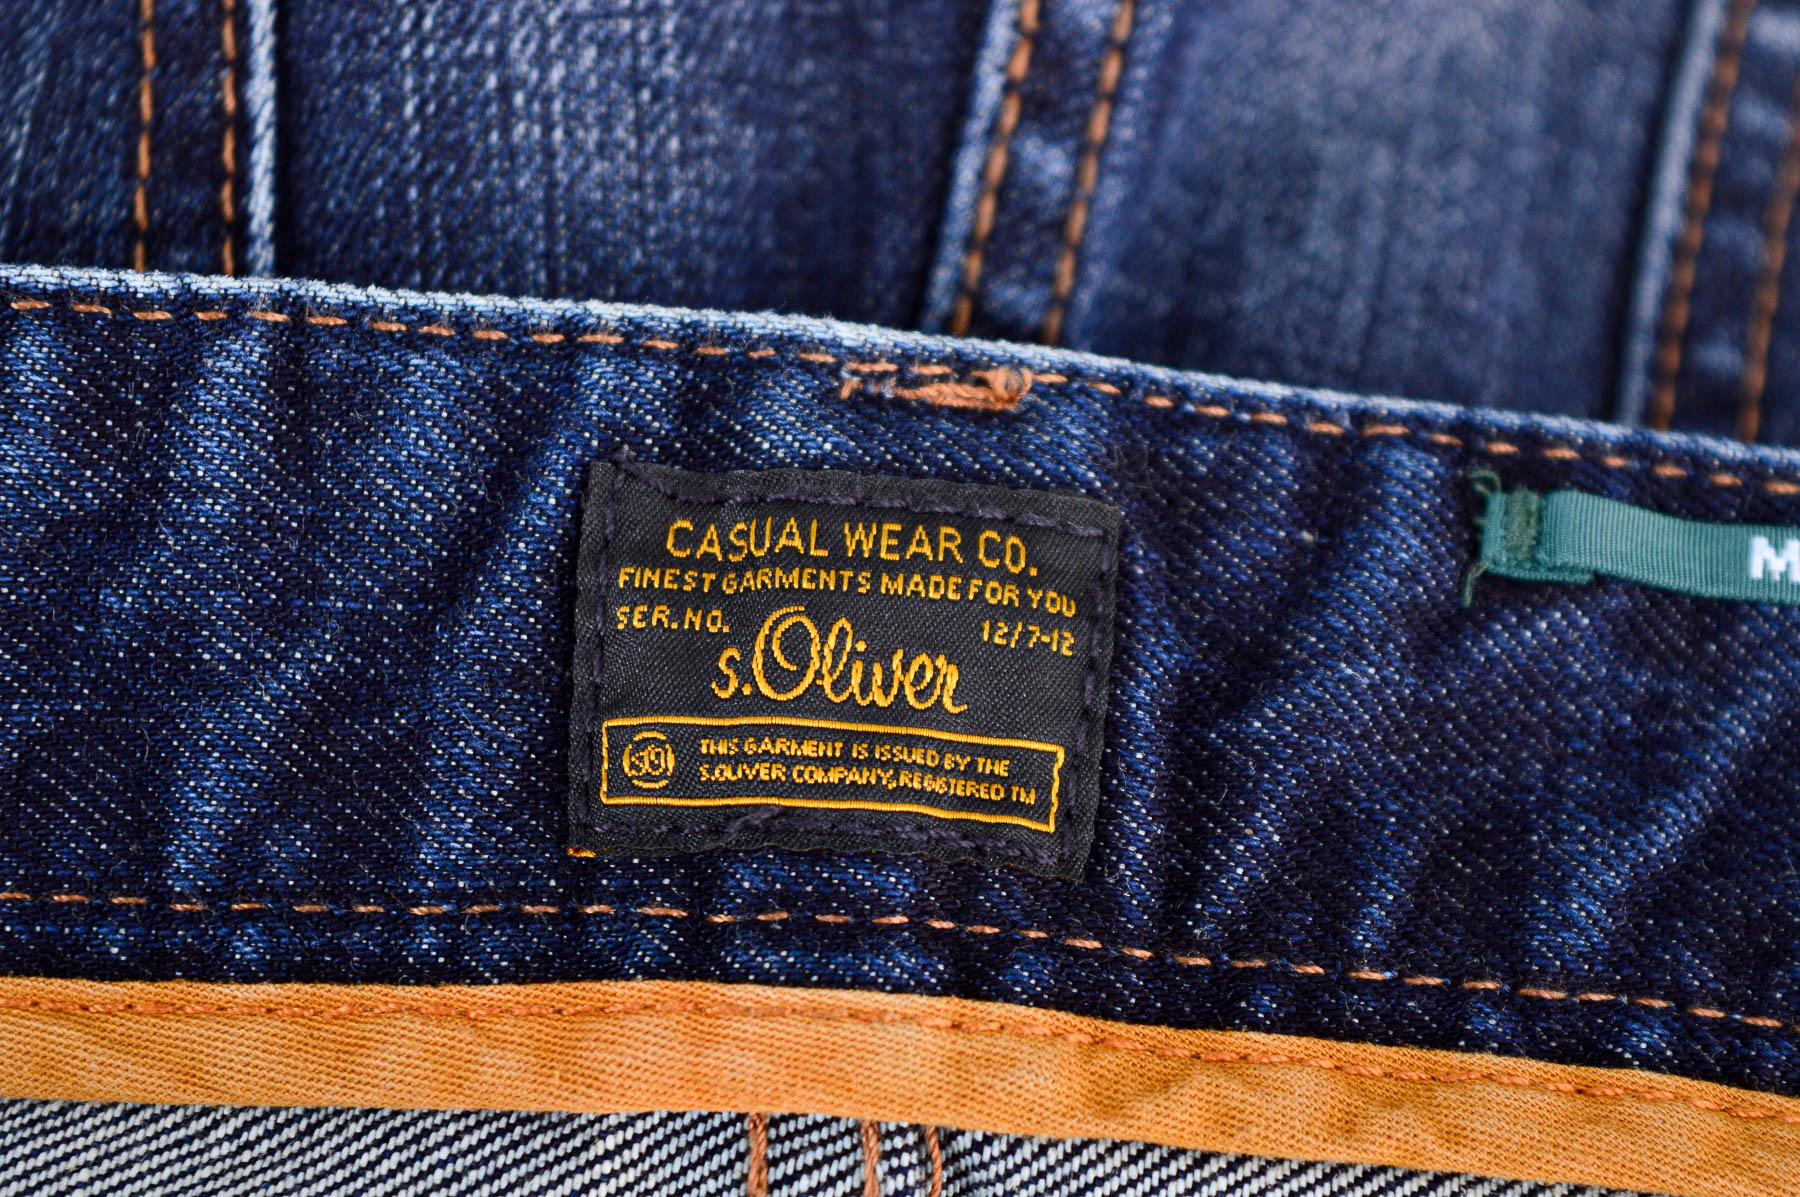 Men's jeans - S.Oliver - 2